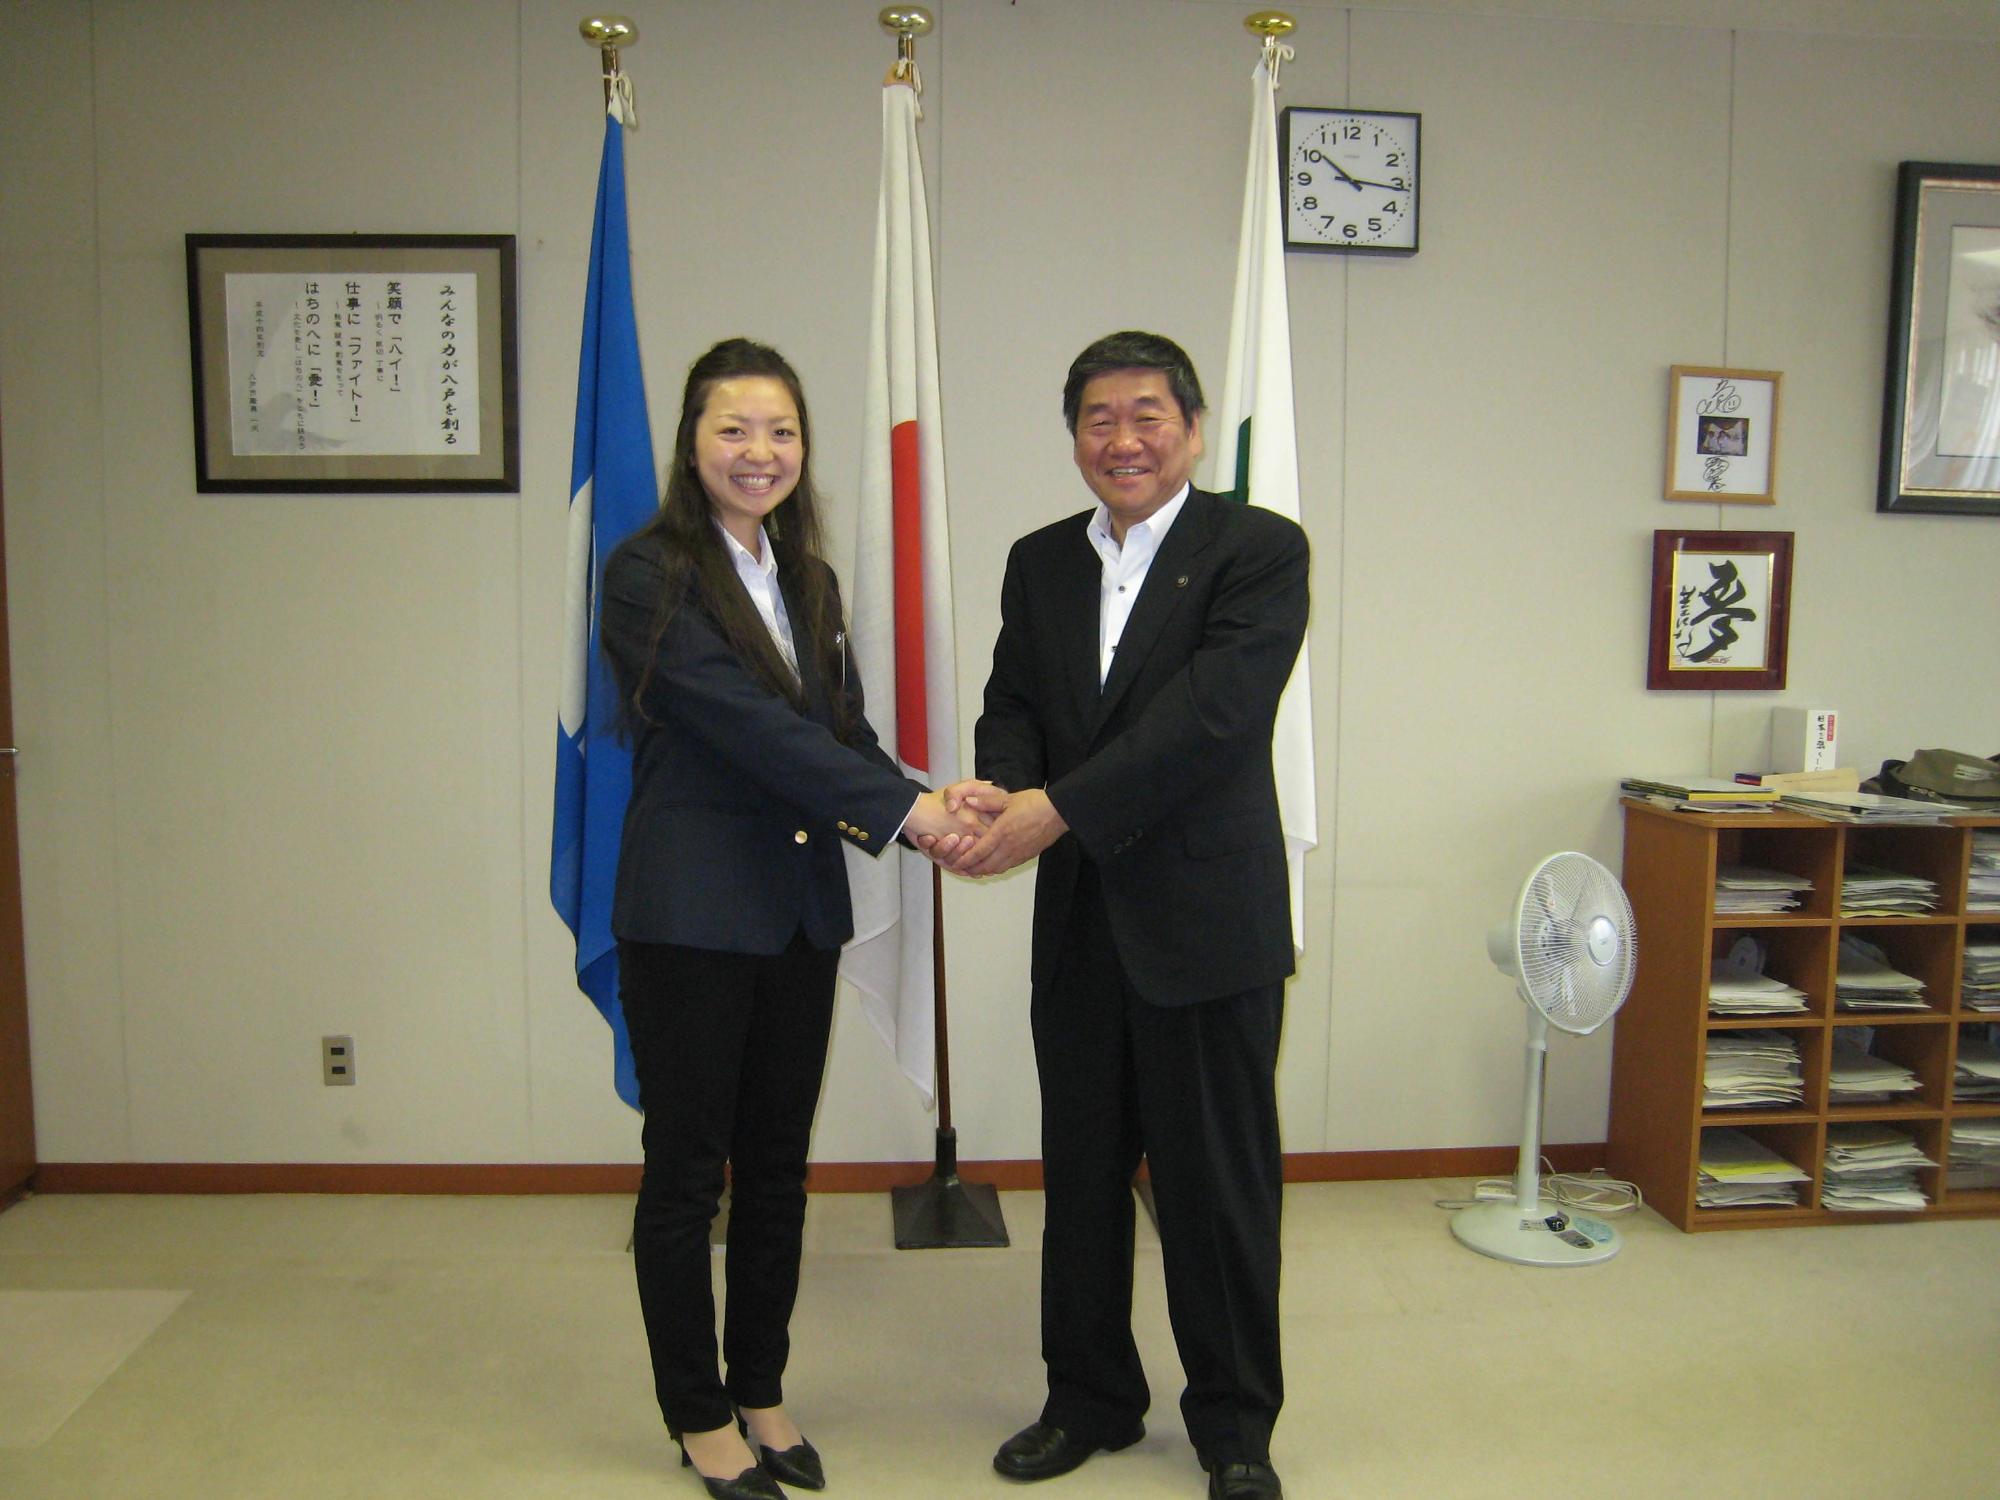 サワハシキヌヨさんが、小林市長らに表敬訪問し、握手している写真